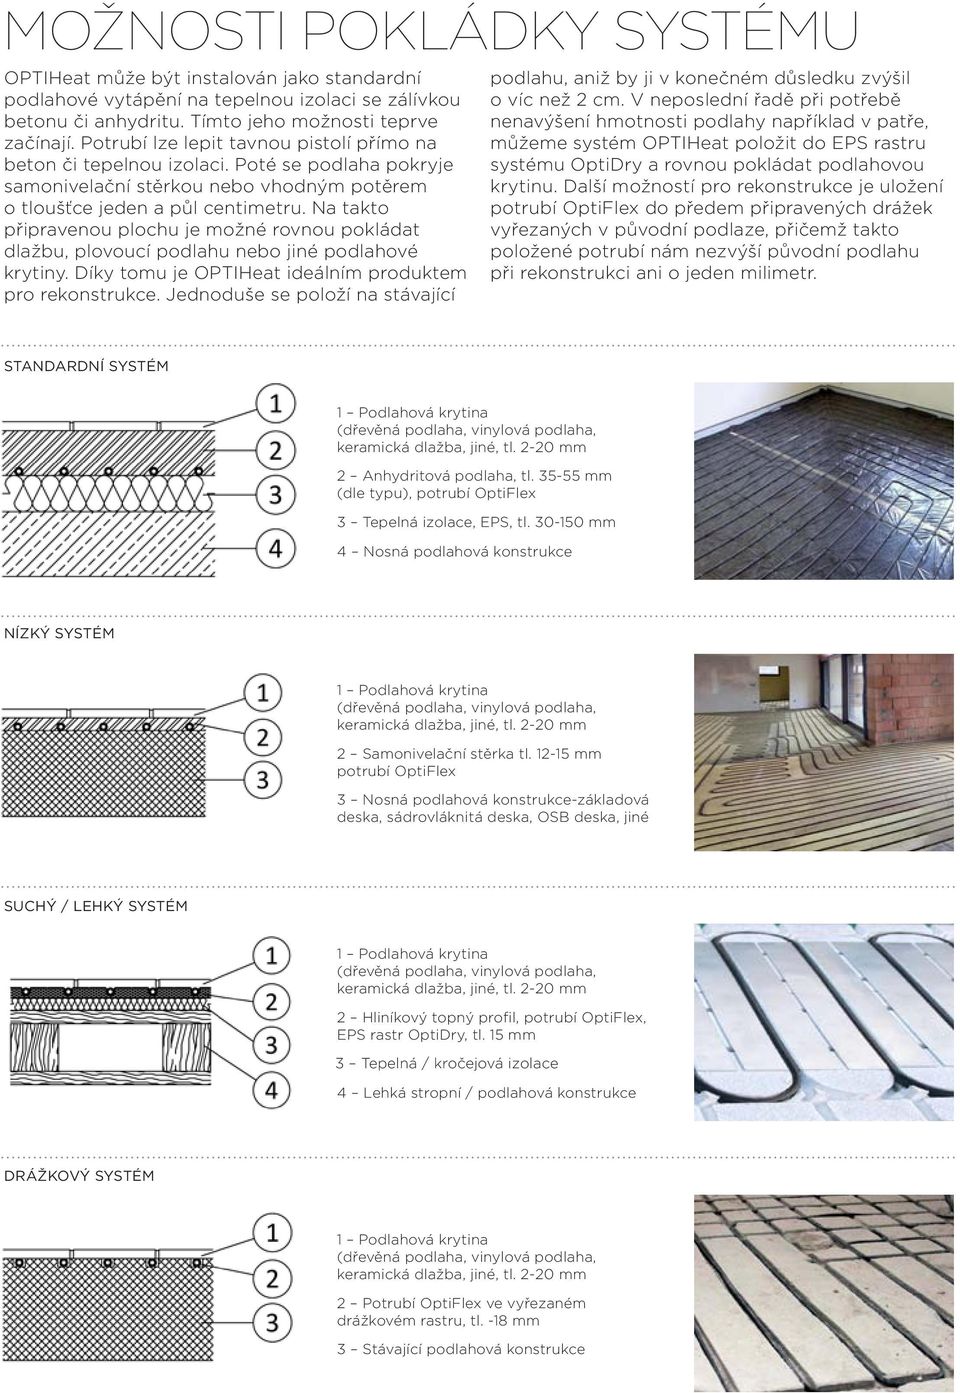 Na takto připravenou plochu je možné rovnou pokládat dlažbu, plovoucí podlahu nebo jiné podlahové krytiny. Díky tomu je OPTIHeat ideálním produktem pro rekonstrukce.